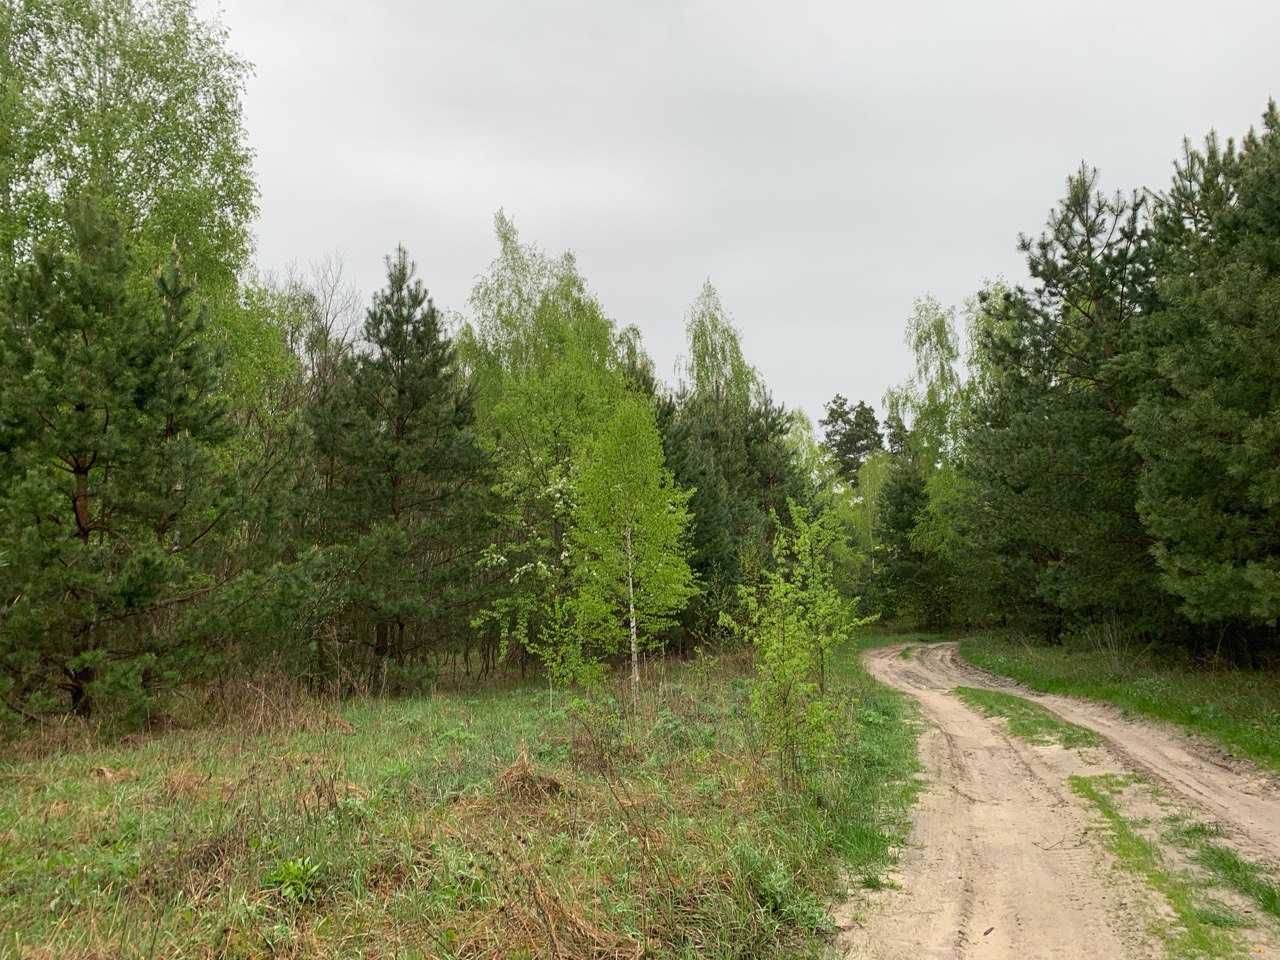 Земельна ділянка прямо серед лісу в Київькій області. Ціна за 1Га